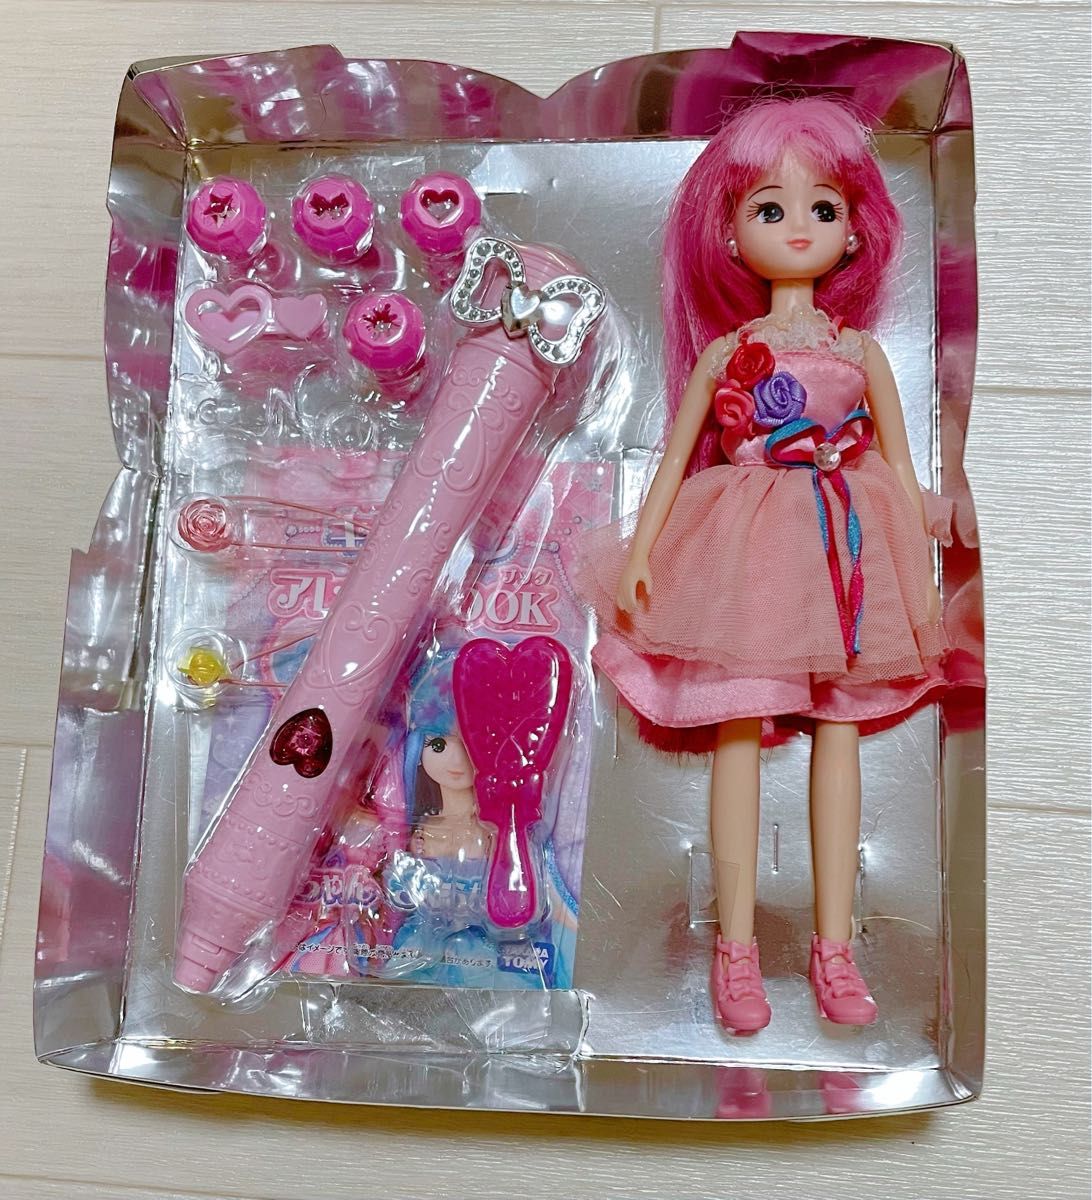 タカラトミー キラチェン リカちゃん 女の子 おもちゃ オモチャ 人形 ドール 遊び 箱あり リカちゃん人形 変身 ピンク 可愛い